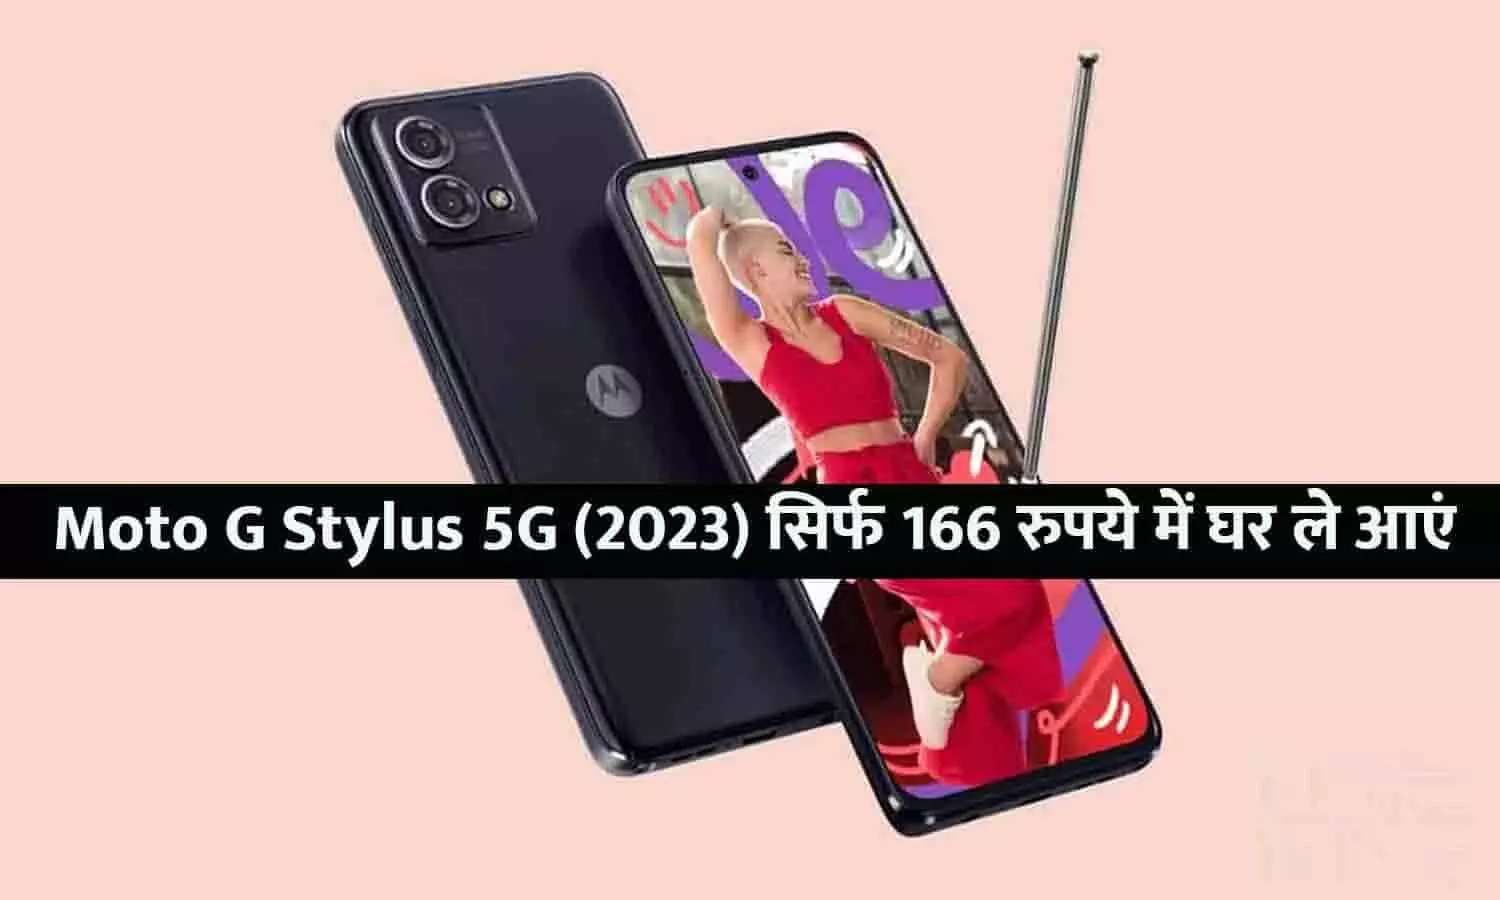 6GB रैम और 50MP कैमरा वाला Moto G Stylus 5G (2023) सिर्फ 166 रुपये में घर ले आएं